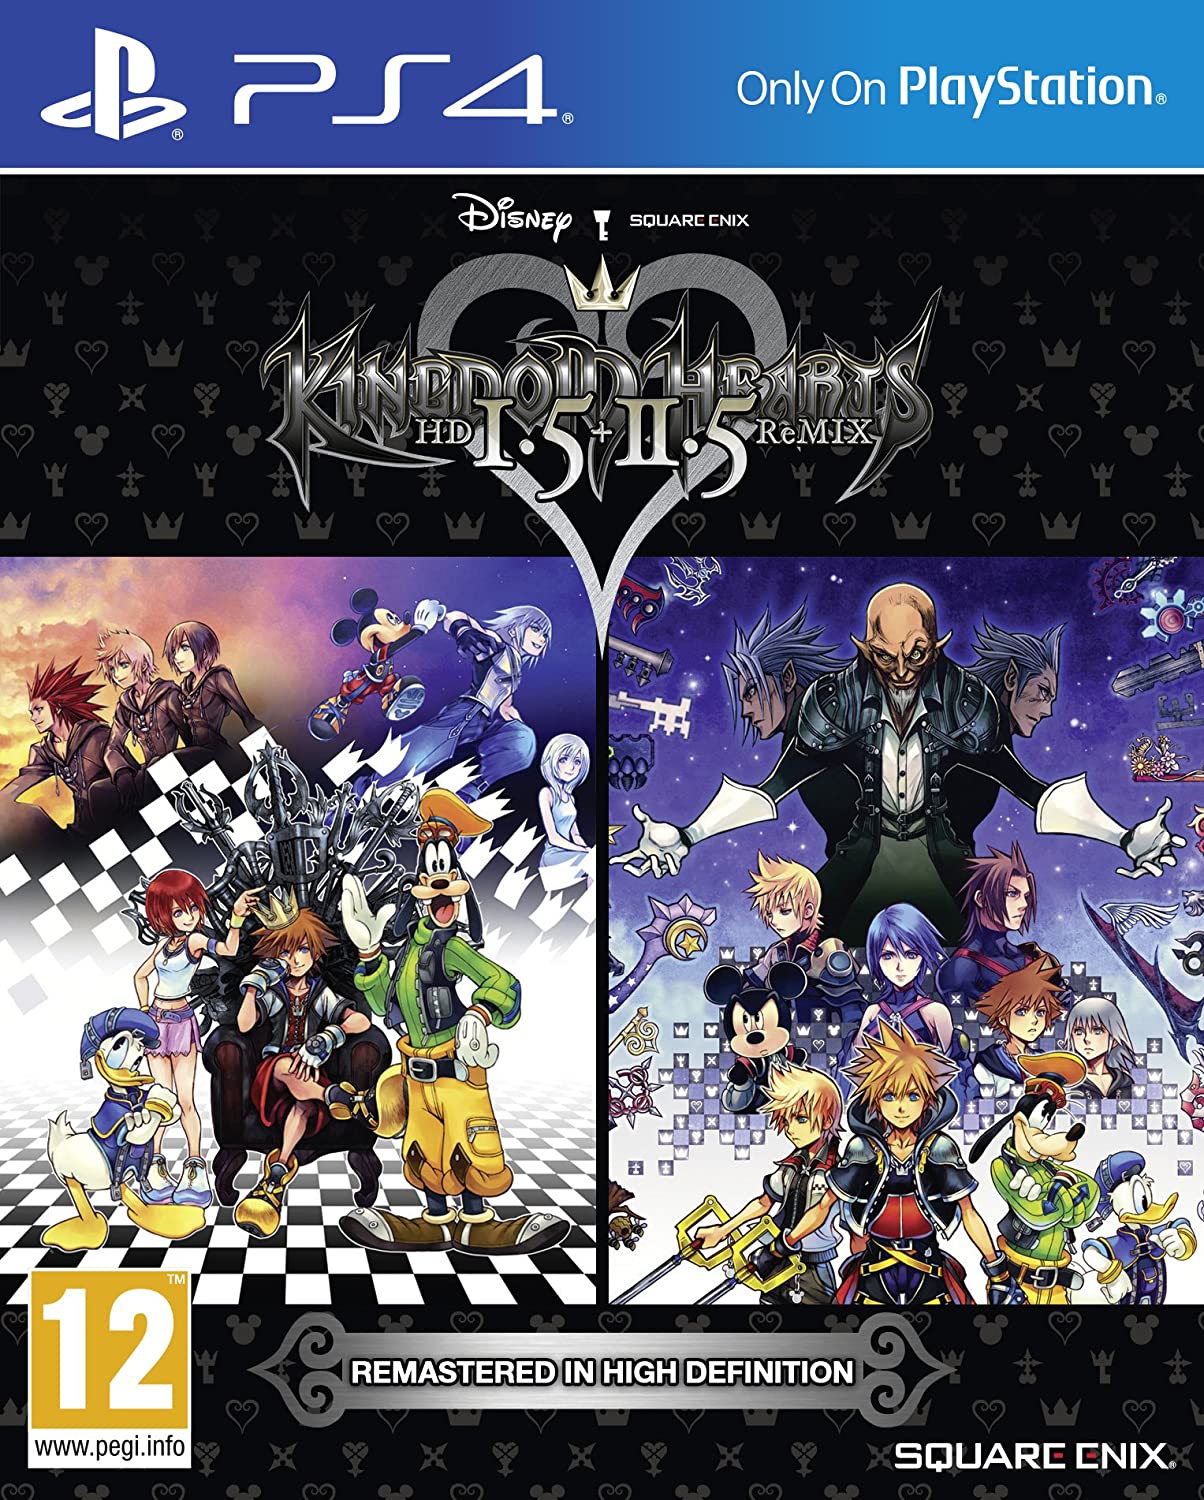 Caratula de Kingdom Hearts HD I.5 + II.5 ReMIX (Kingdom Hearts HD I.5 + II.5 ReMIX) 